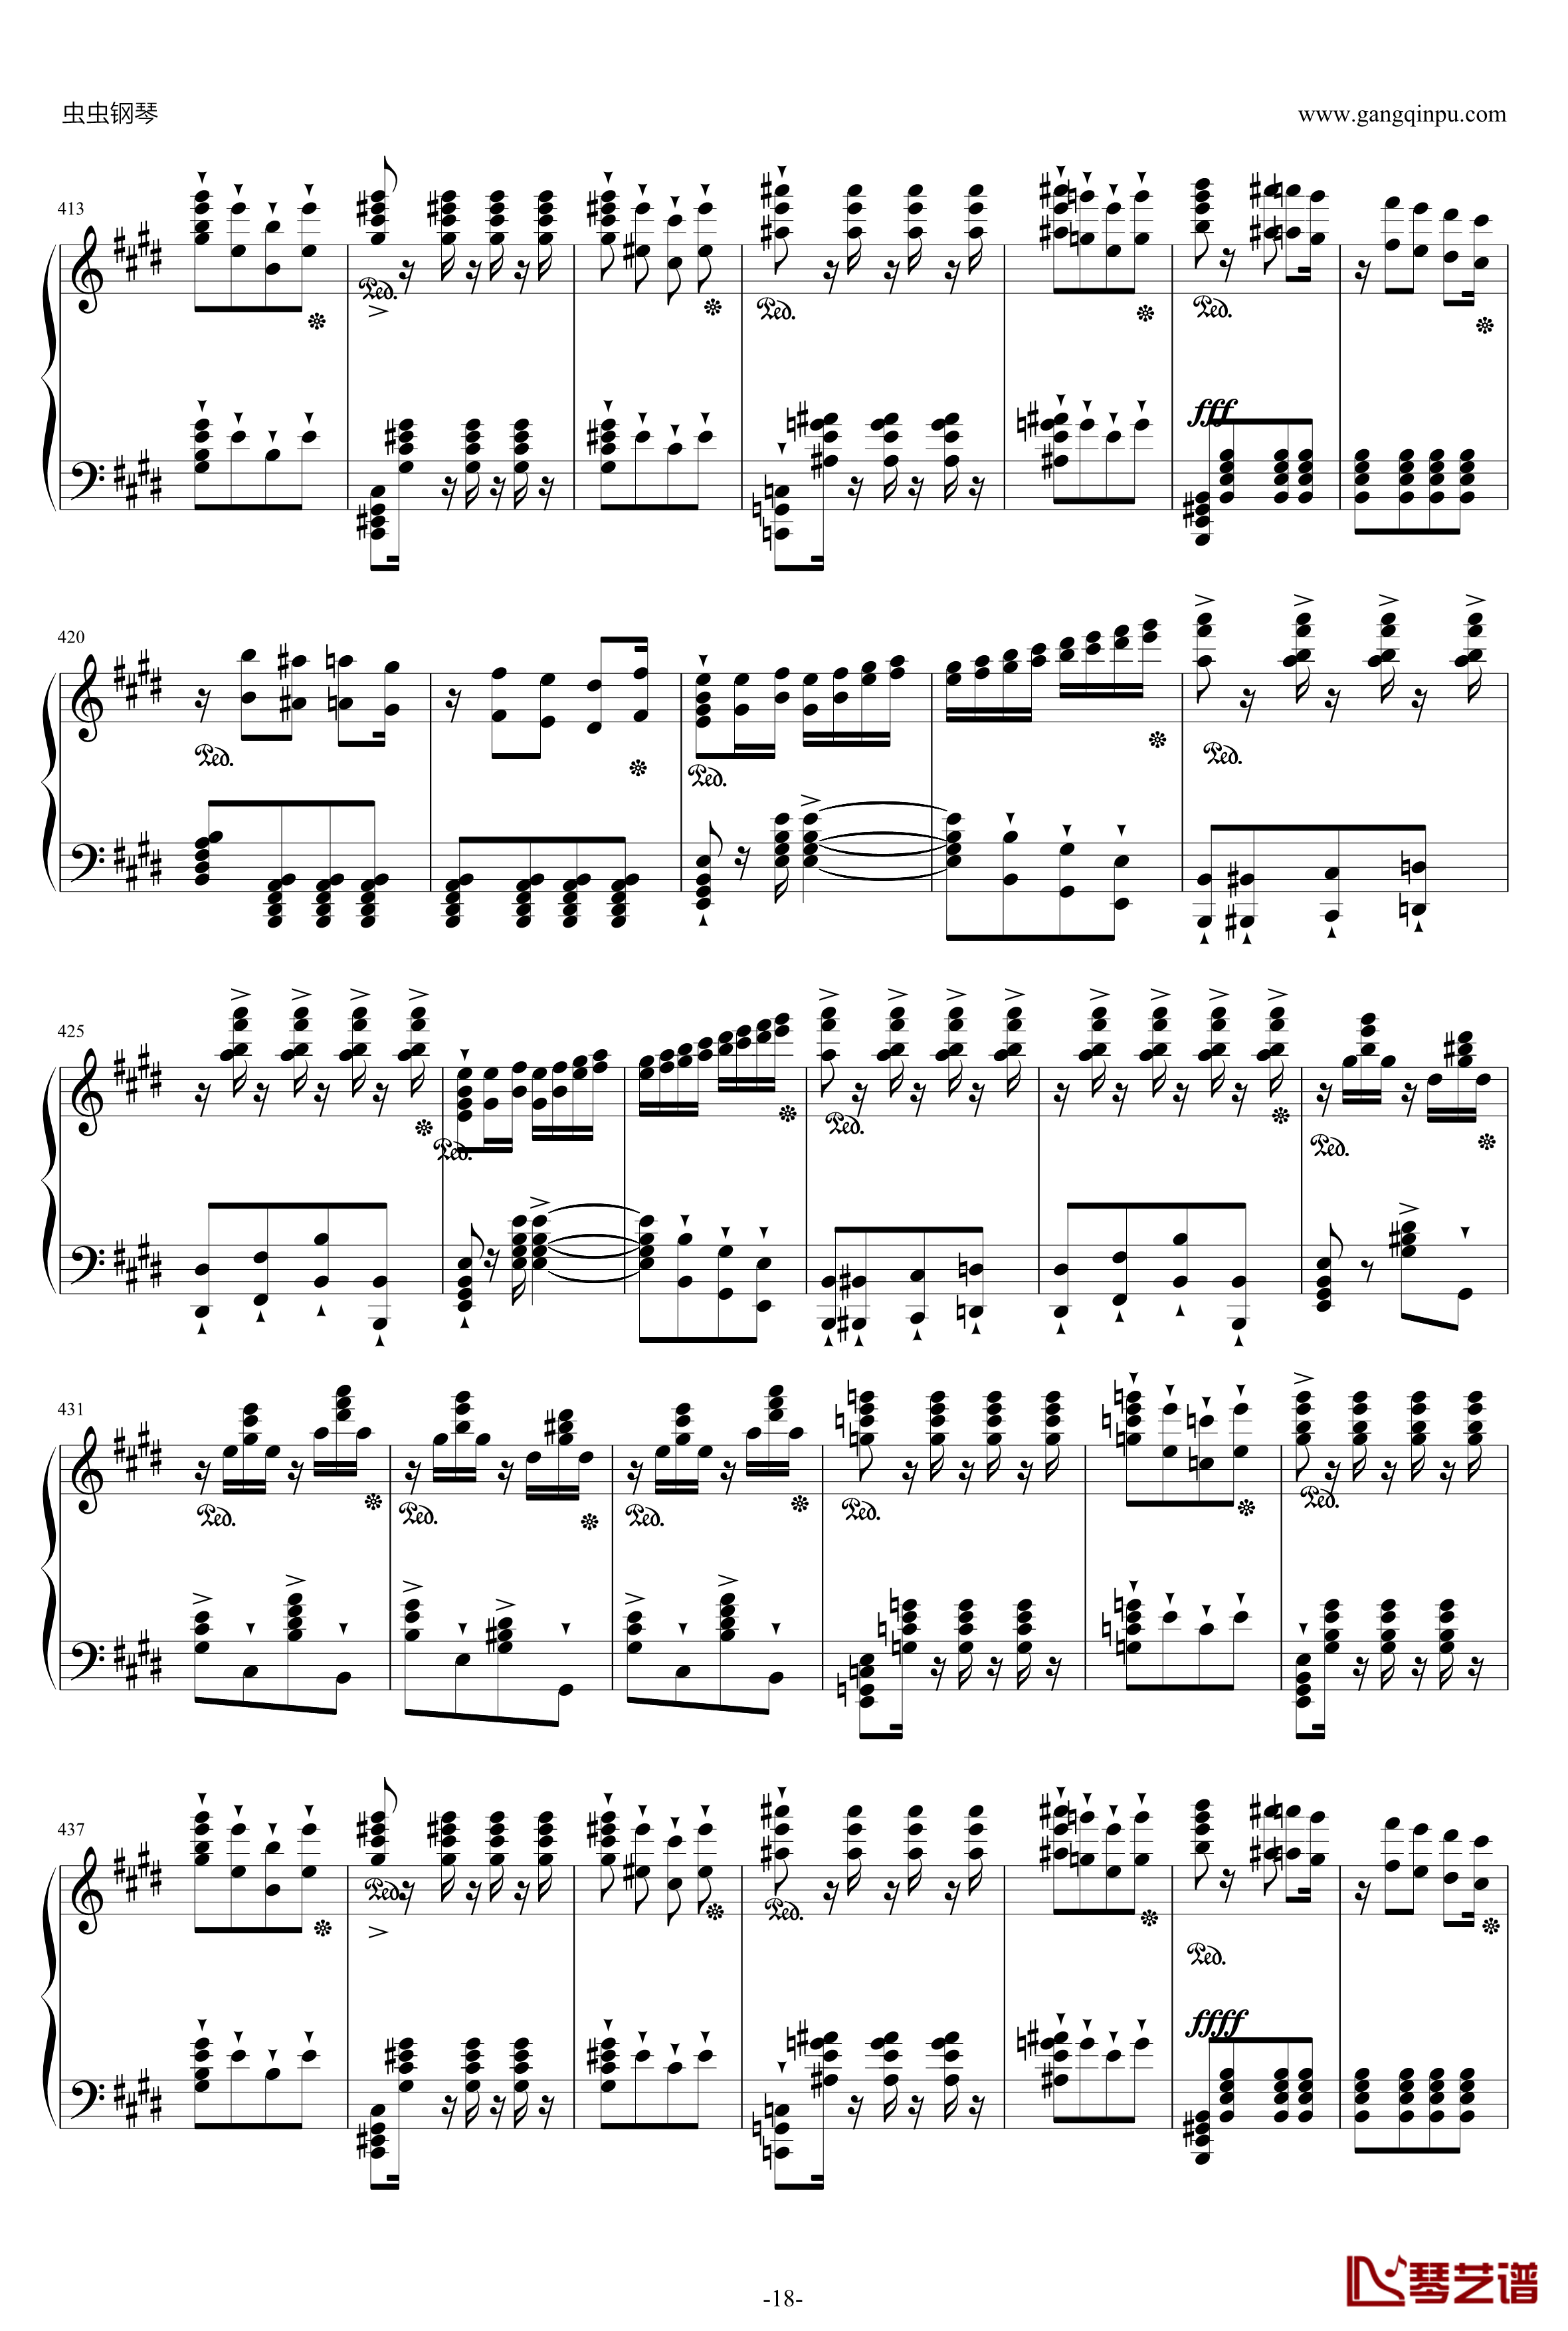 威廉·退尔序曲钢琴谱-李斯特S.55218